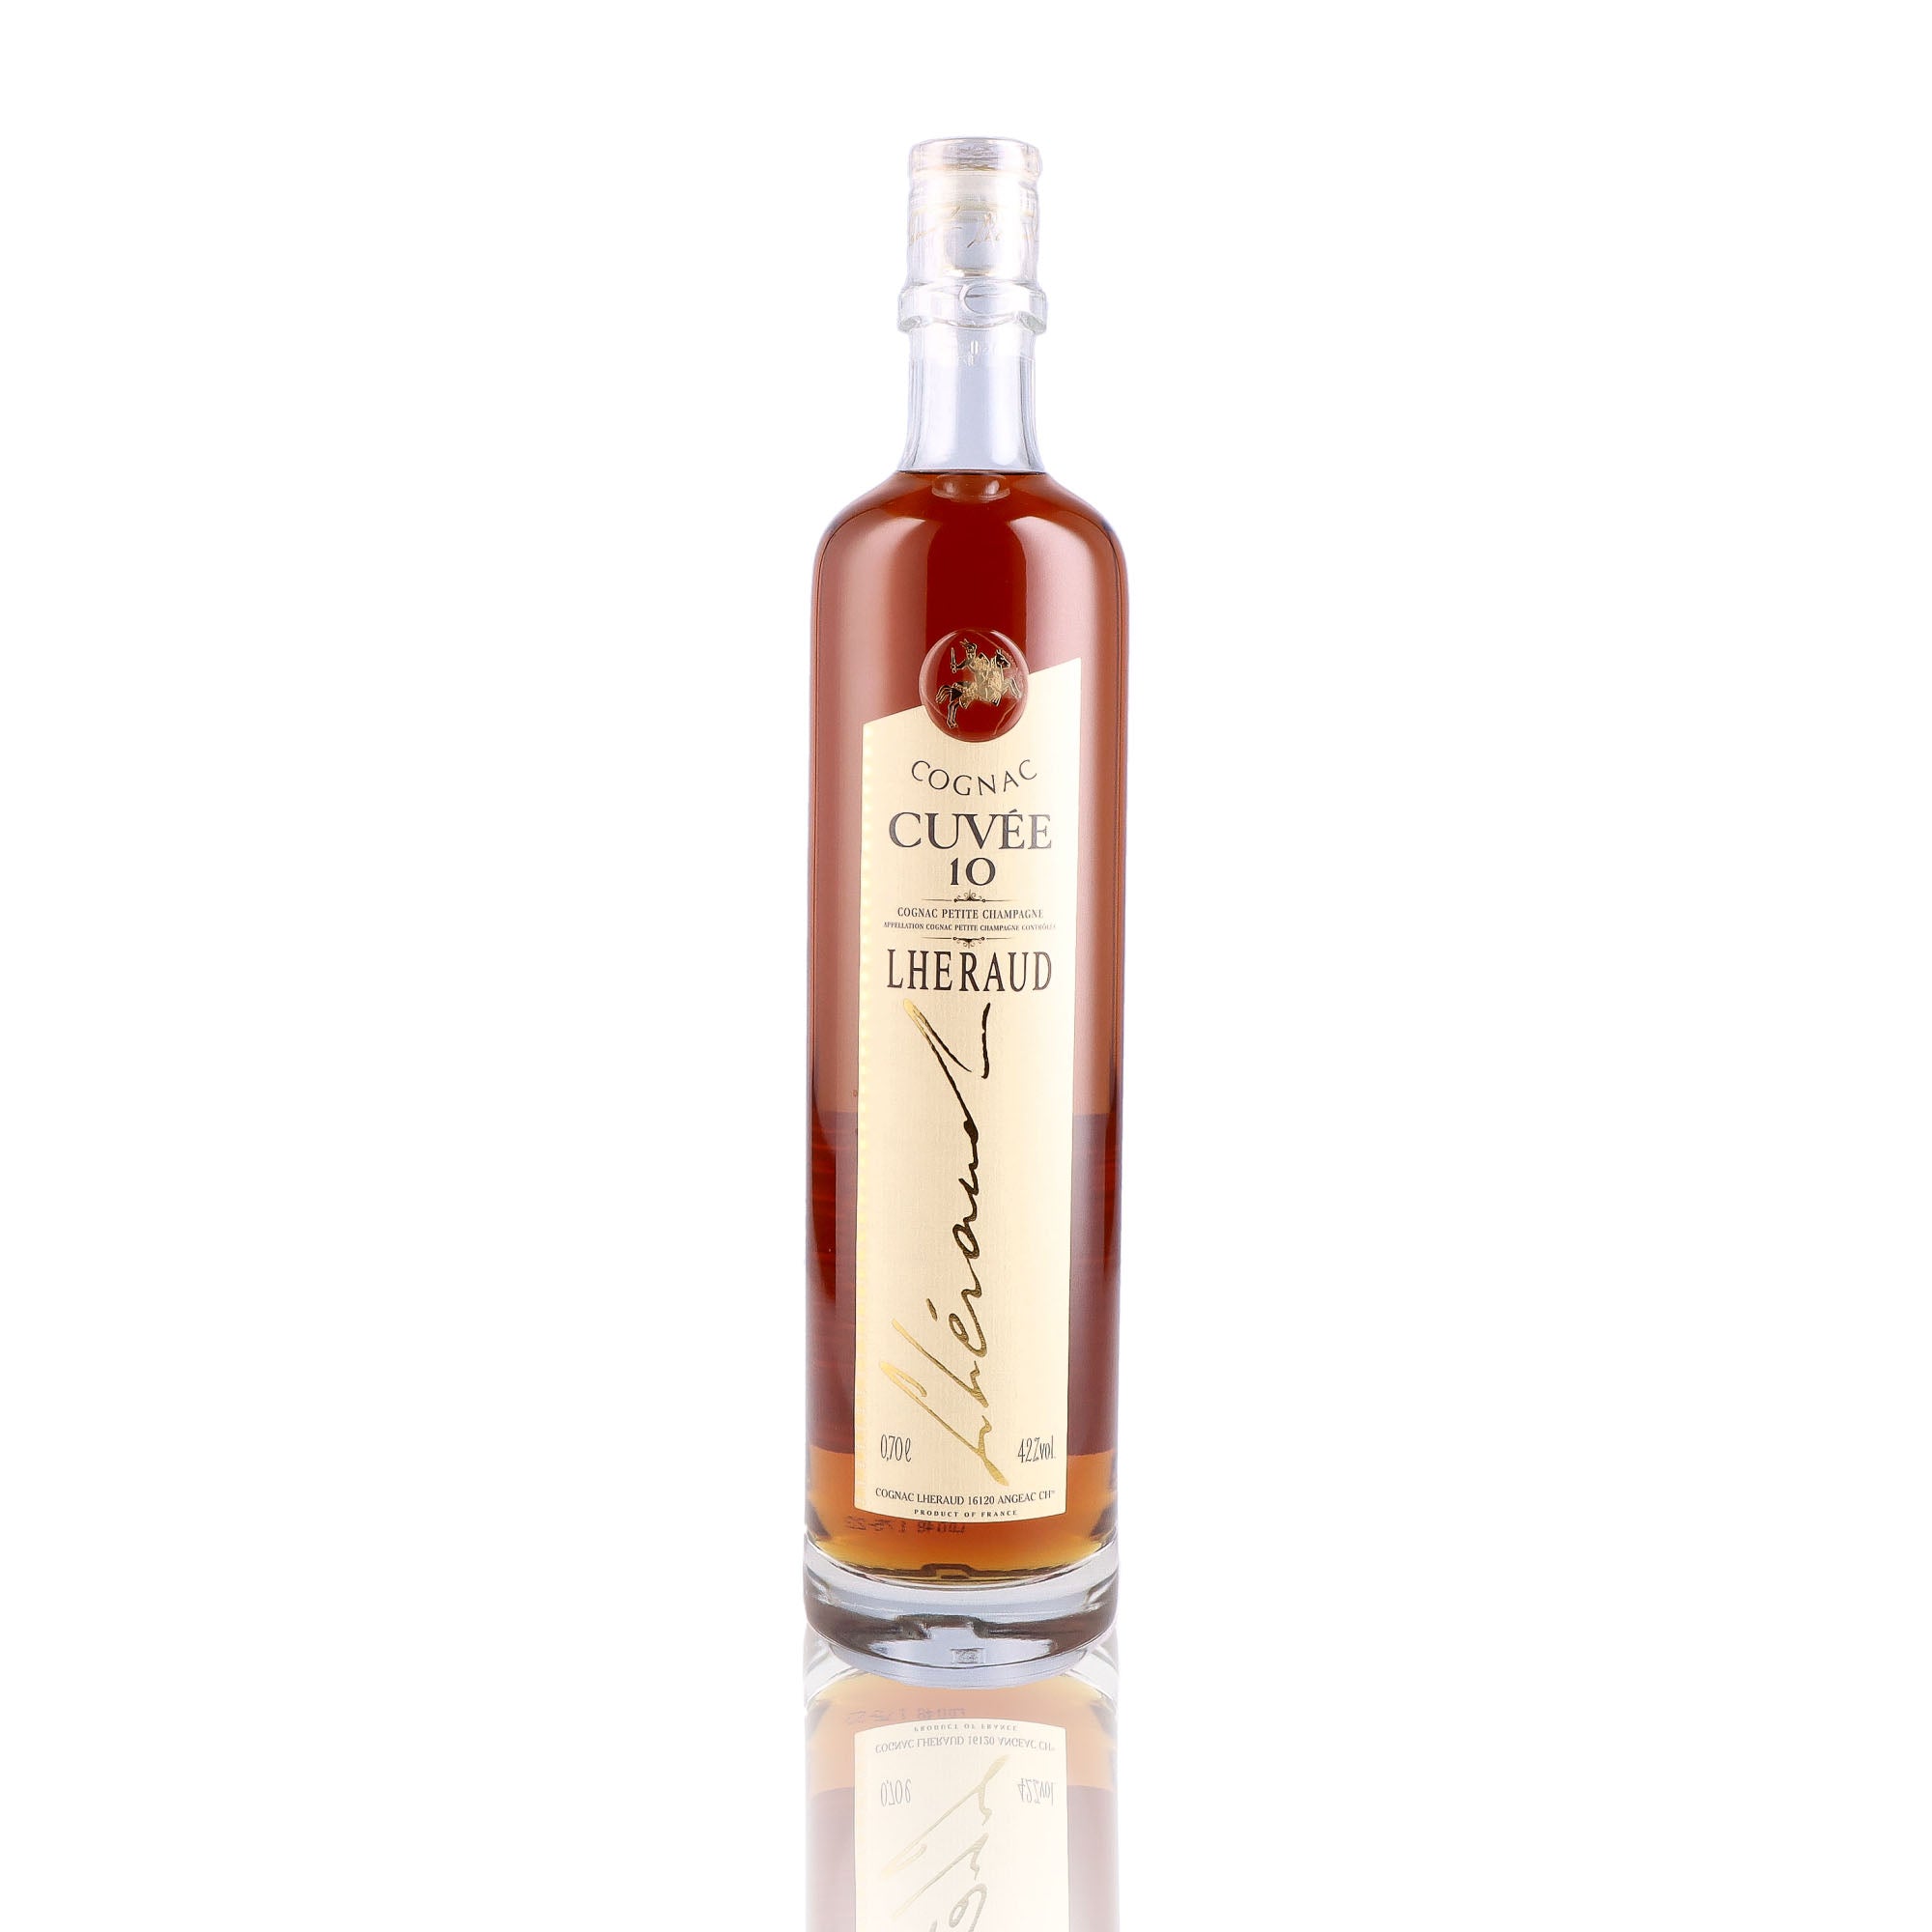 Une bouteille de Cognac, de la marque Lheraud, nommée Cuvée , 10 Ans d'âge.